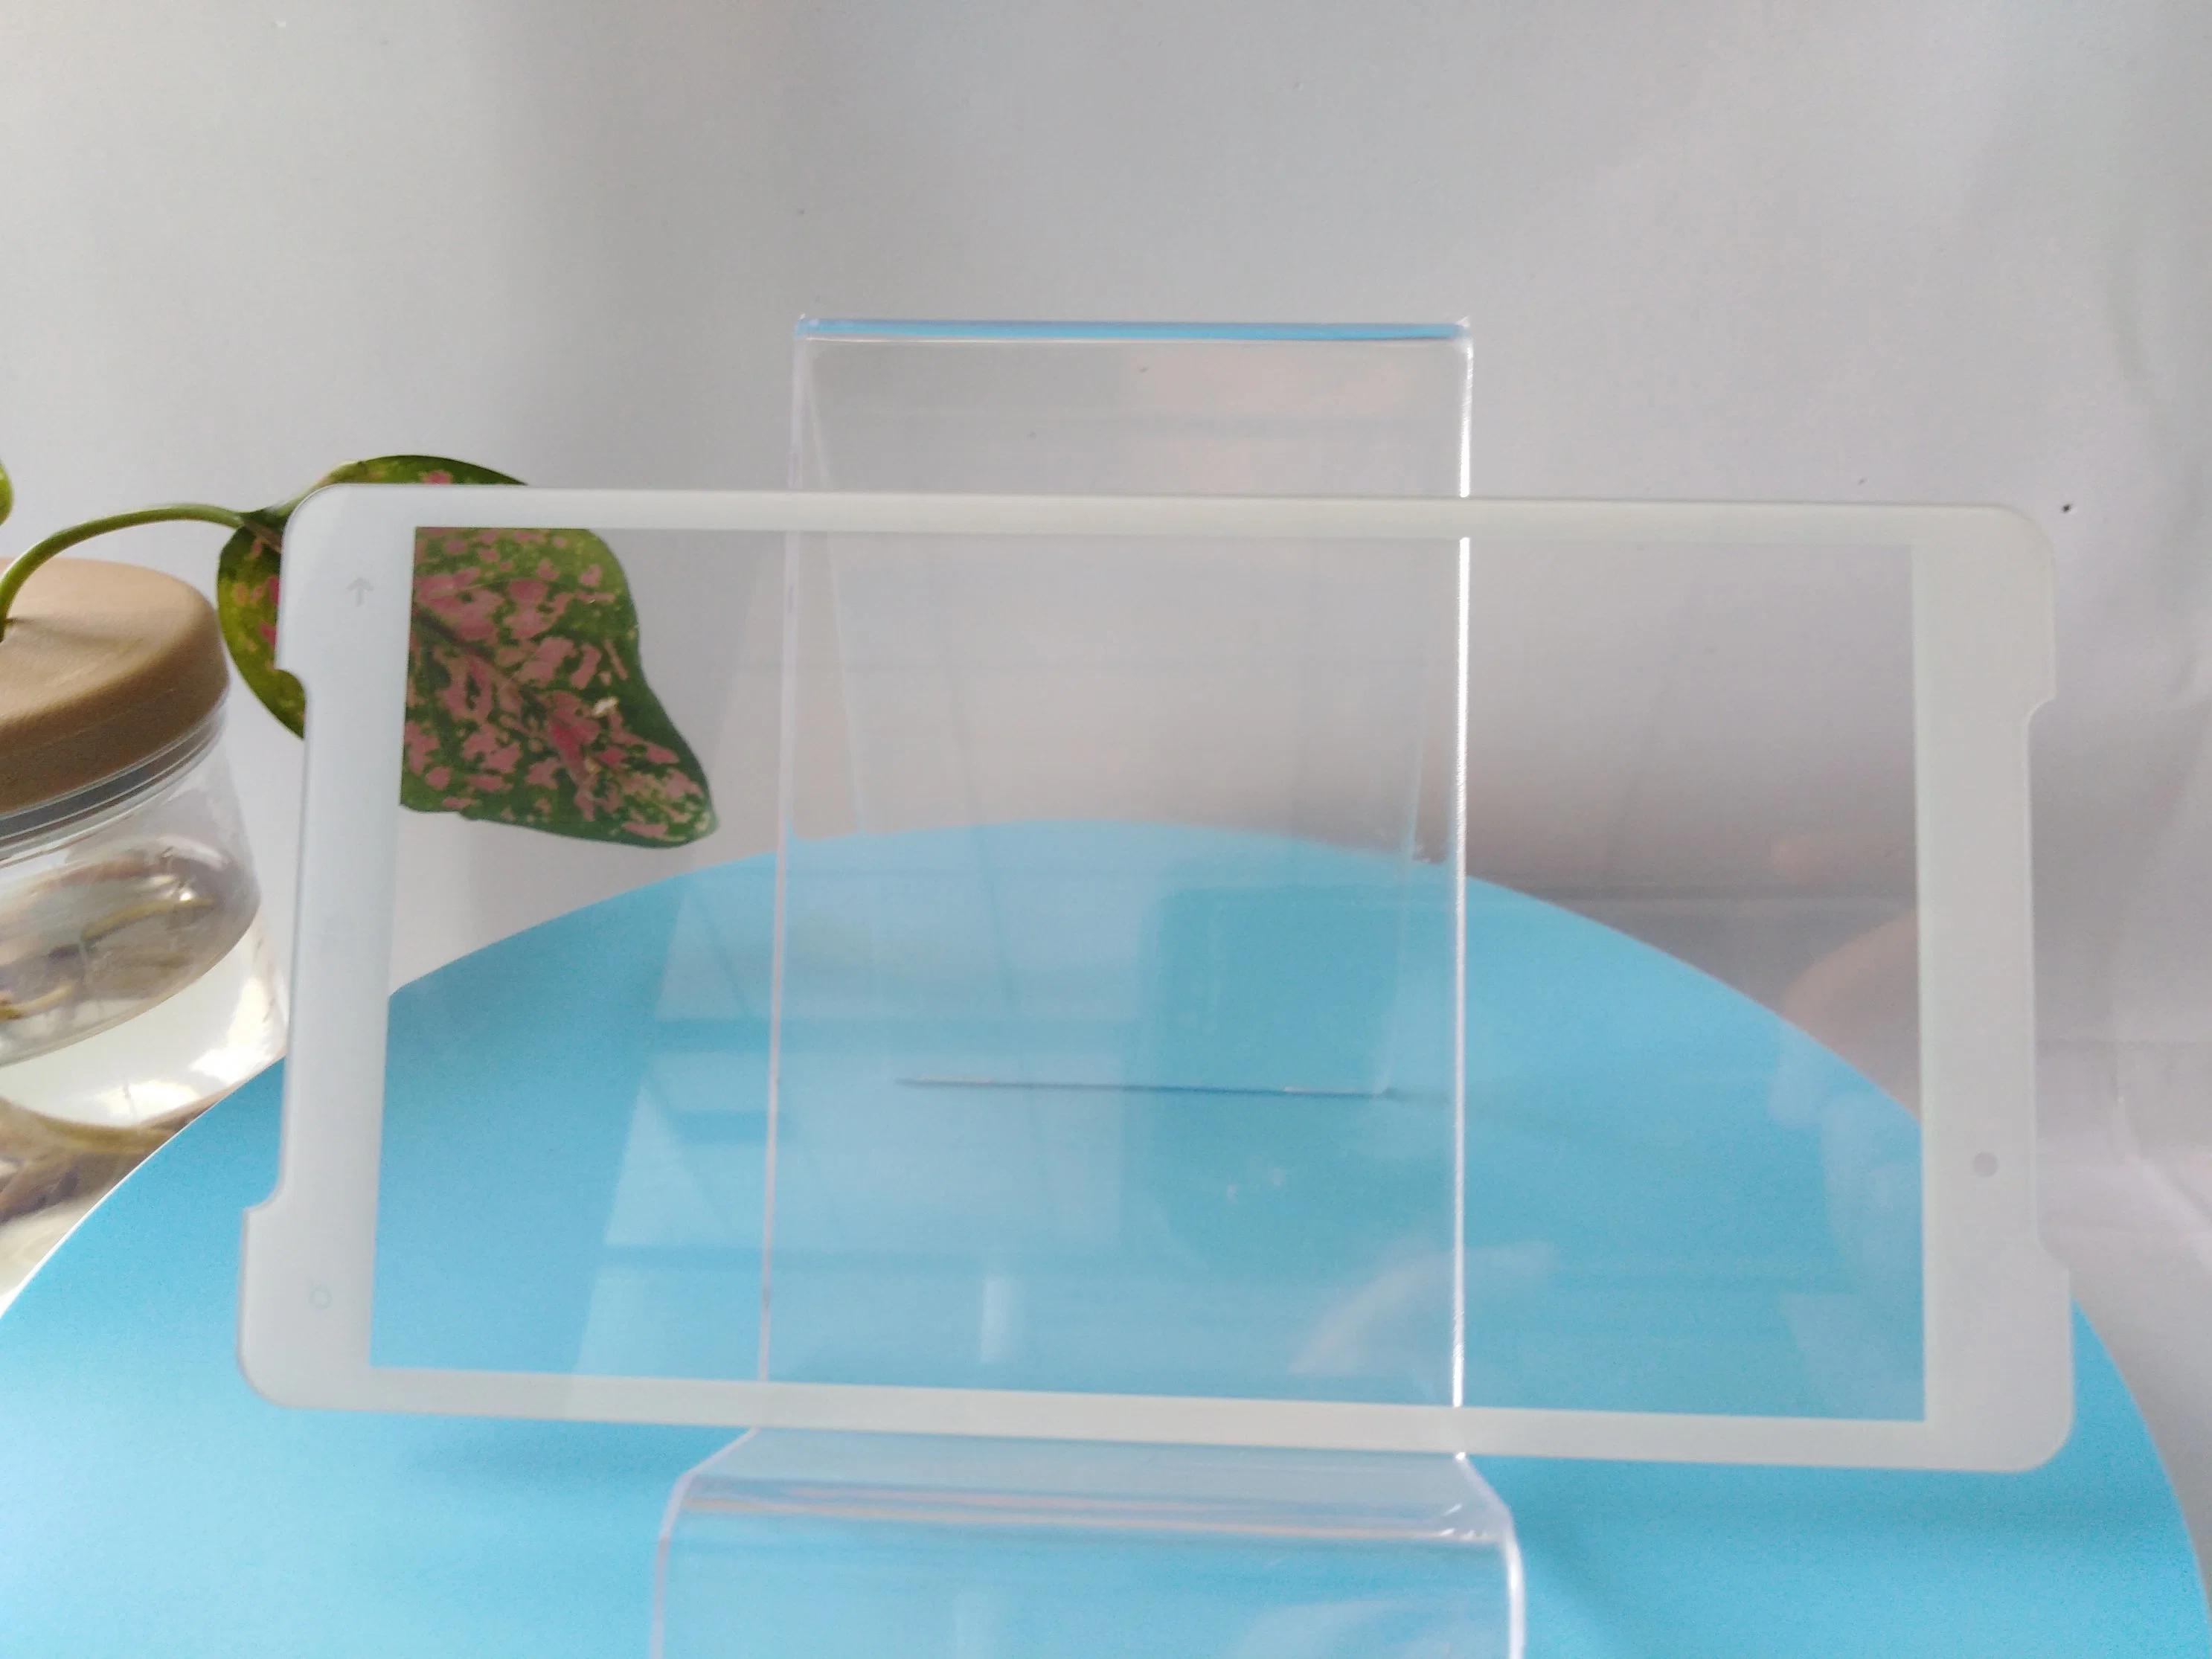 vidrio templado de alta calidad personalizables Serigrafía Vidrio fabricado en China utiliza productos de electrónica de consumo